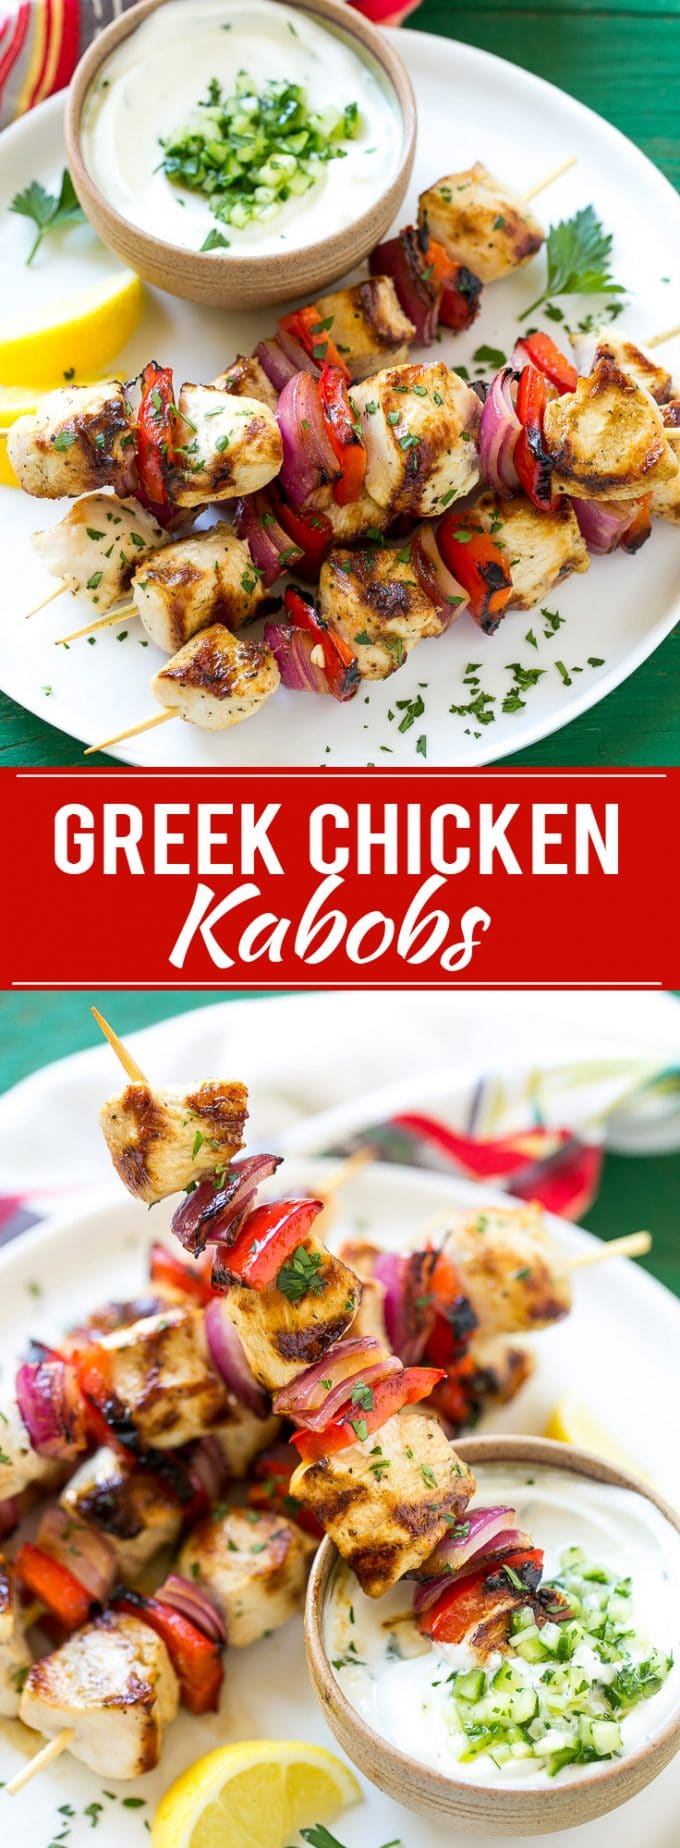 Greek Chicken Kabobs | Grilled Chicken Kabobs | Healthy Chicken Recipe | Greek Chicken #greekfood #chicken #grilling #grilledchicken #kabobs #dinner #dinneratthezoo